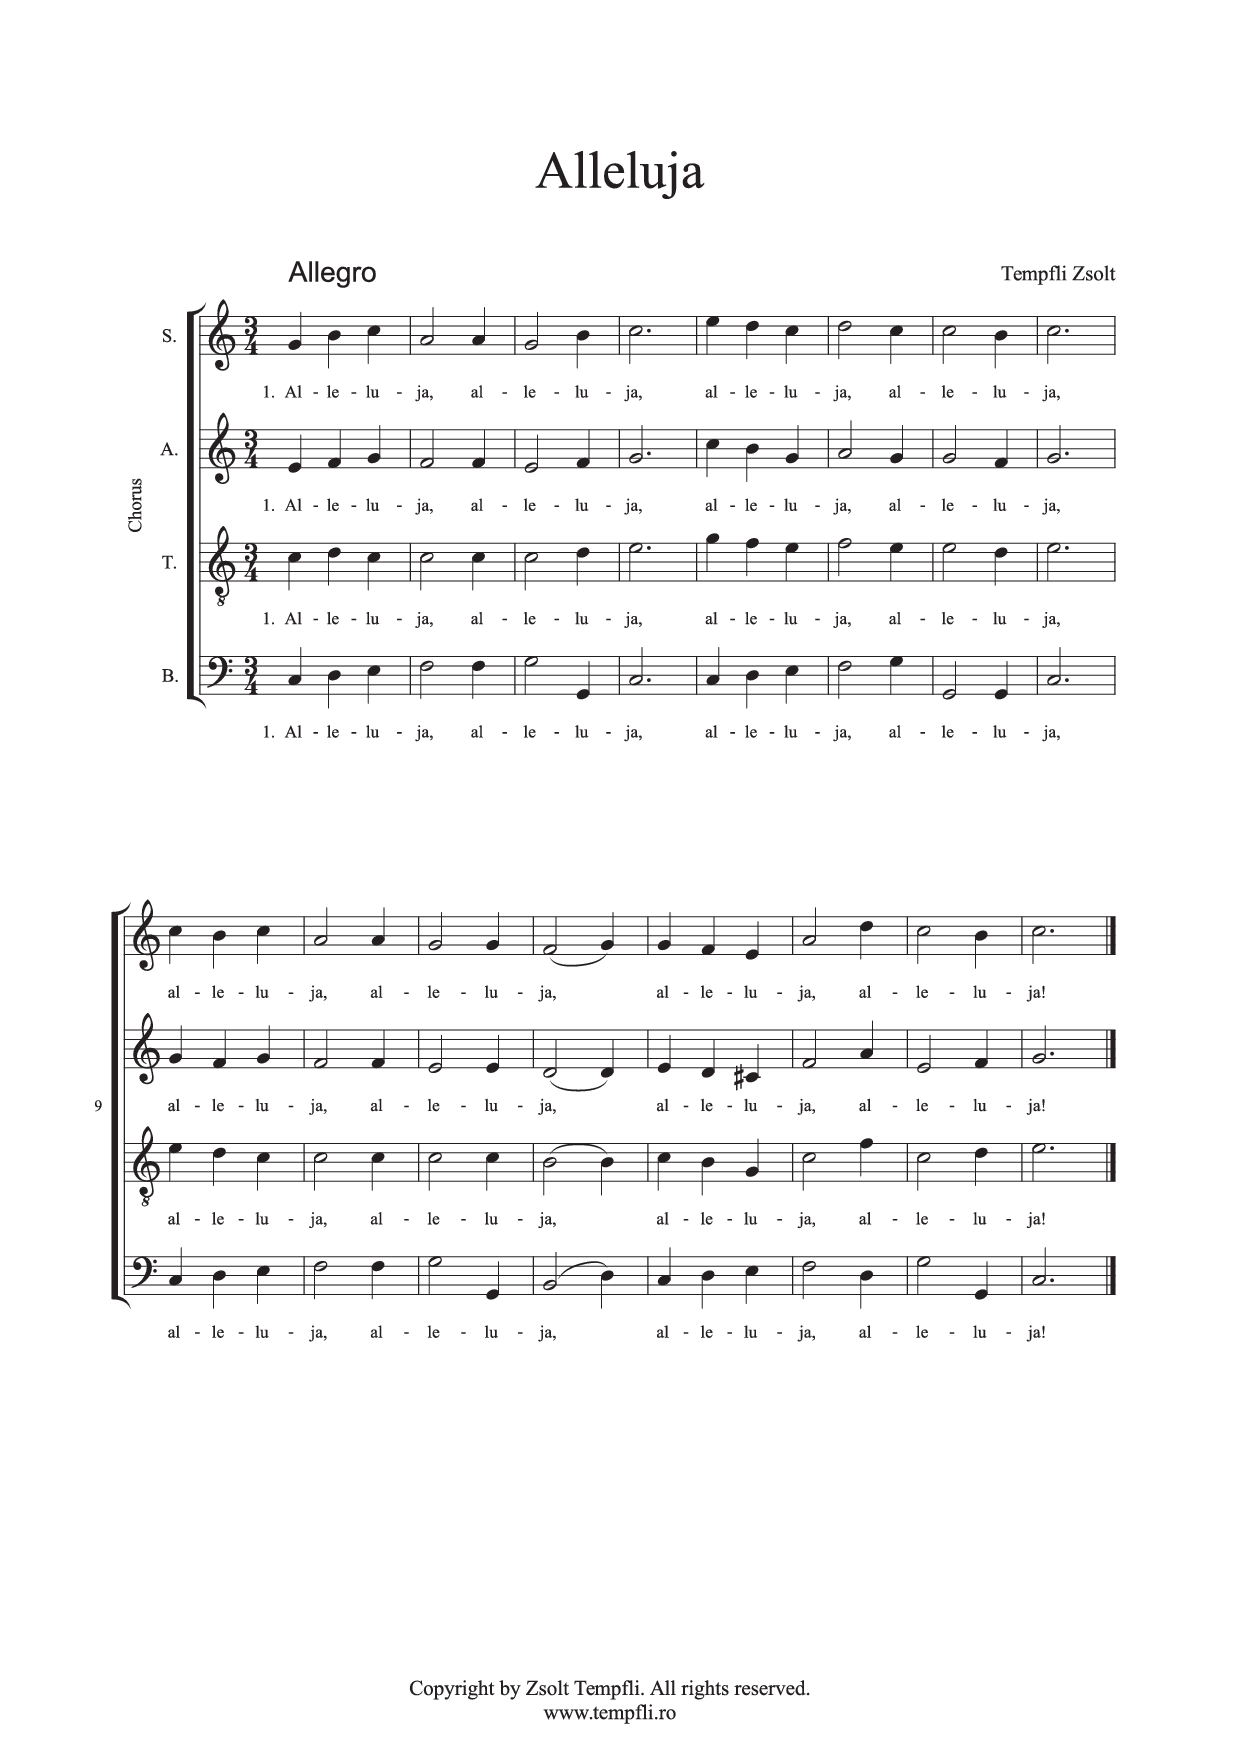 Zsolt Tempfli: Allelujah (op. 16) for mixed choir (SATB)